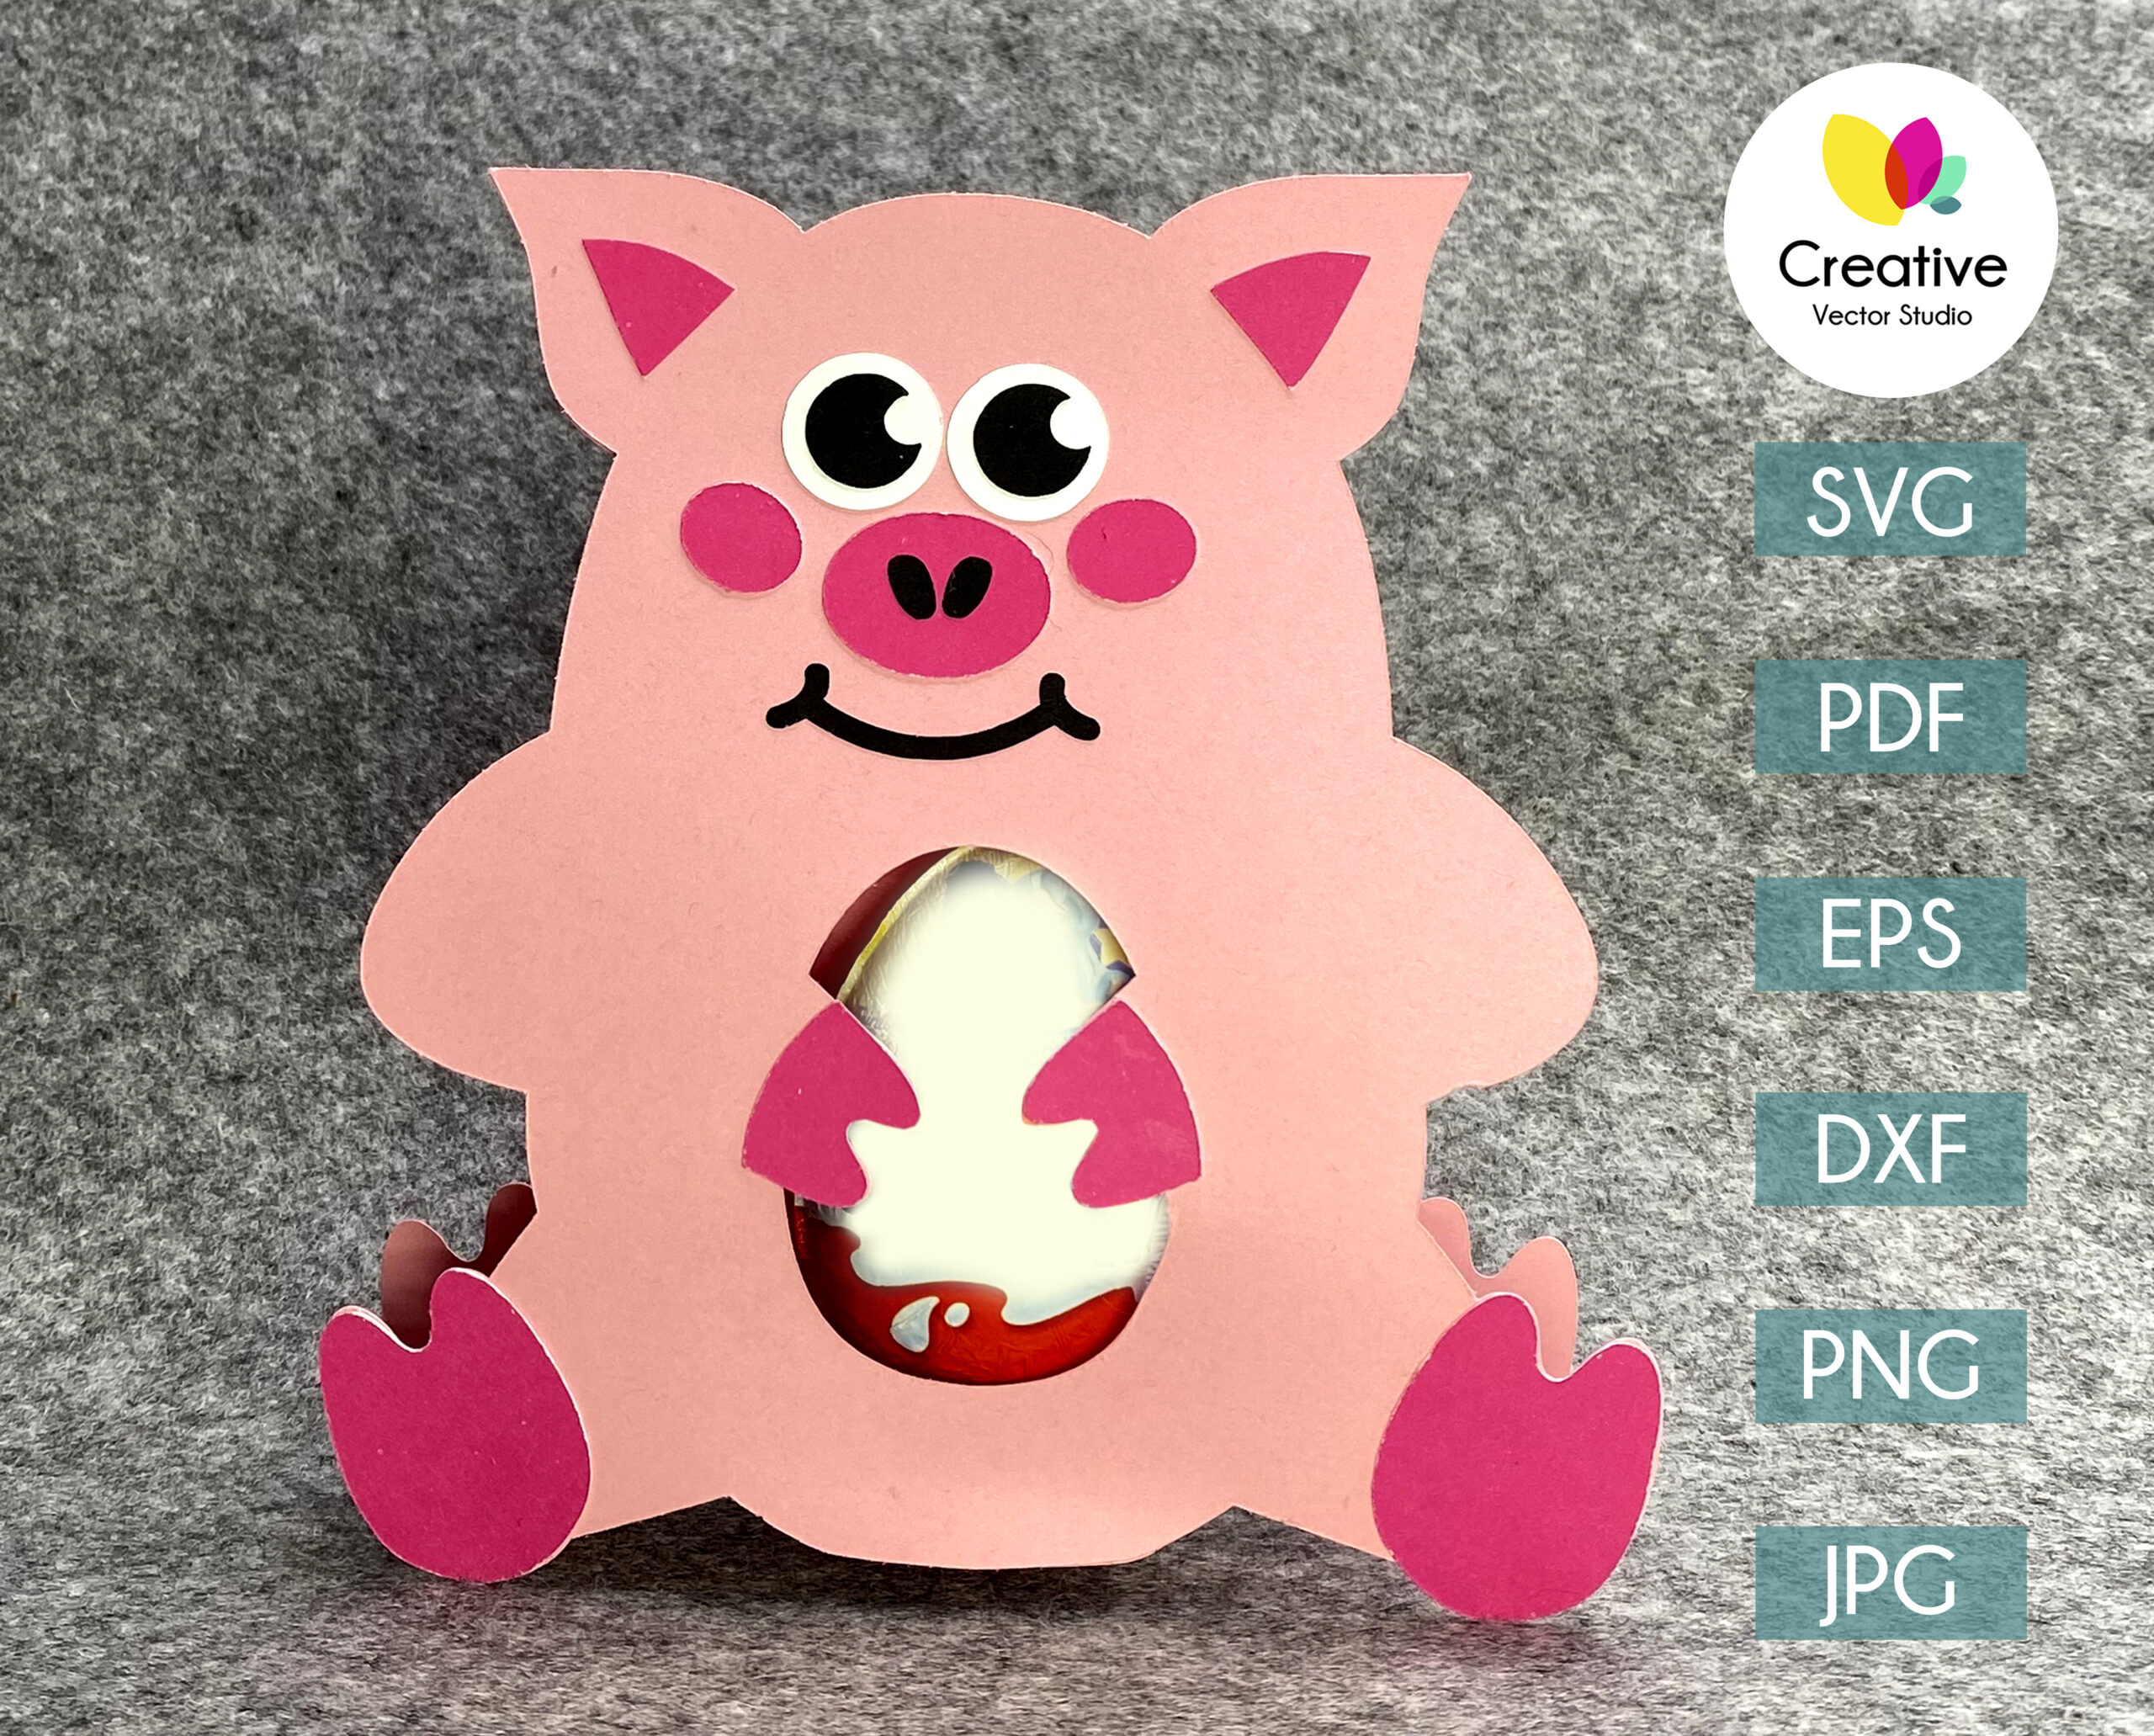 Pig Easter Egg Holder SVG, PNG, DXF Cut File - Creative Vector Studio